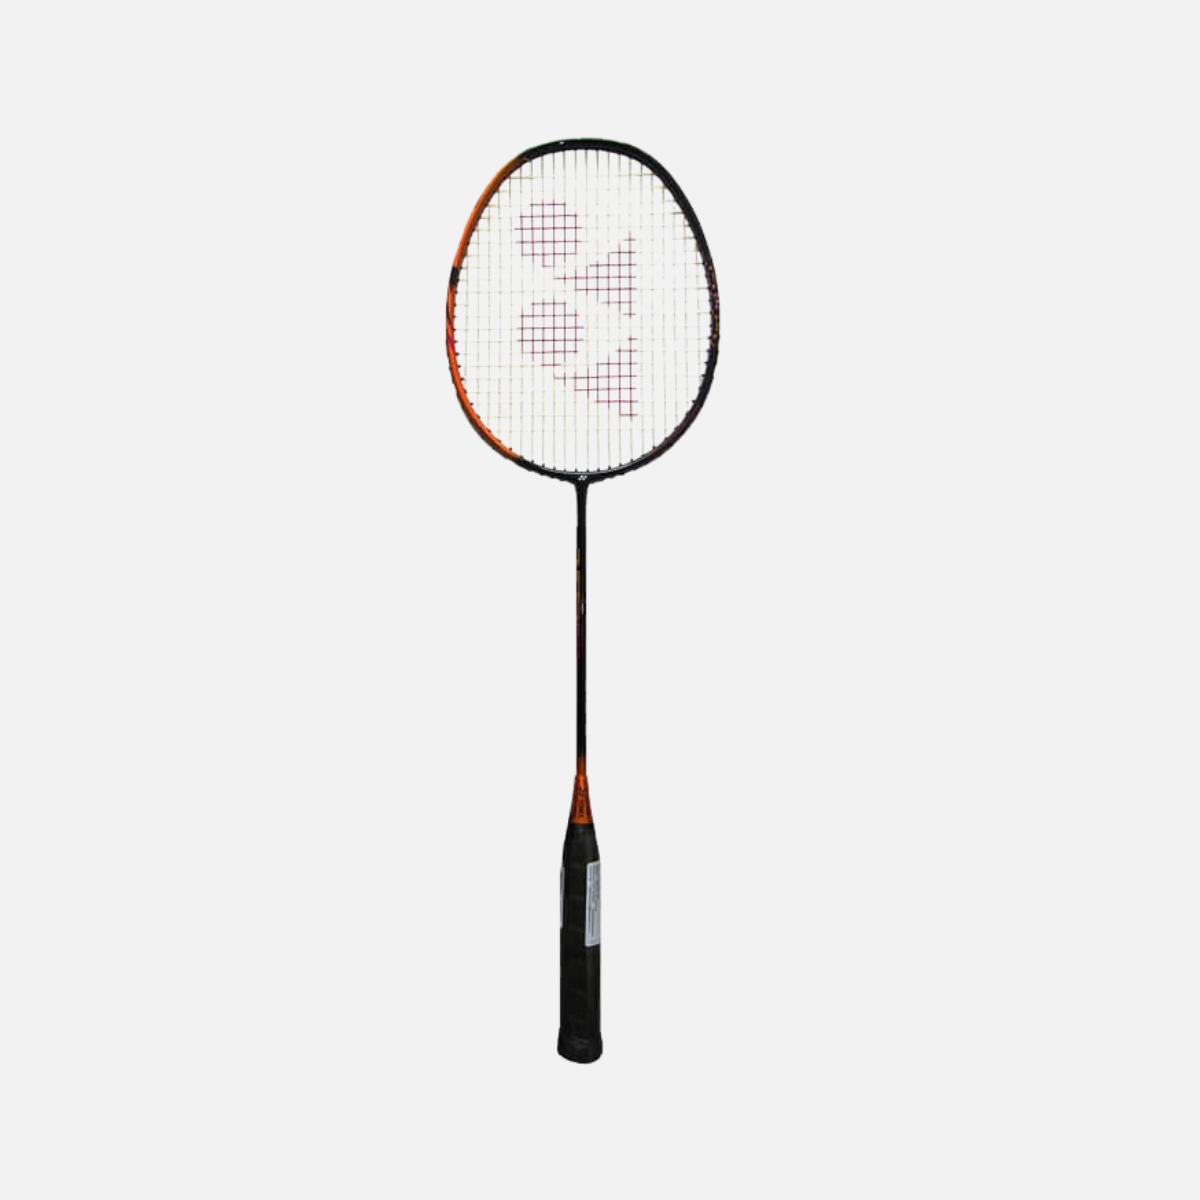 Yonex Astrox Smash Badminton Racquet -Orange/Red/Black